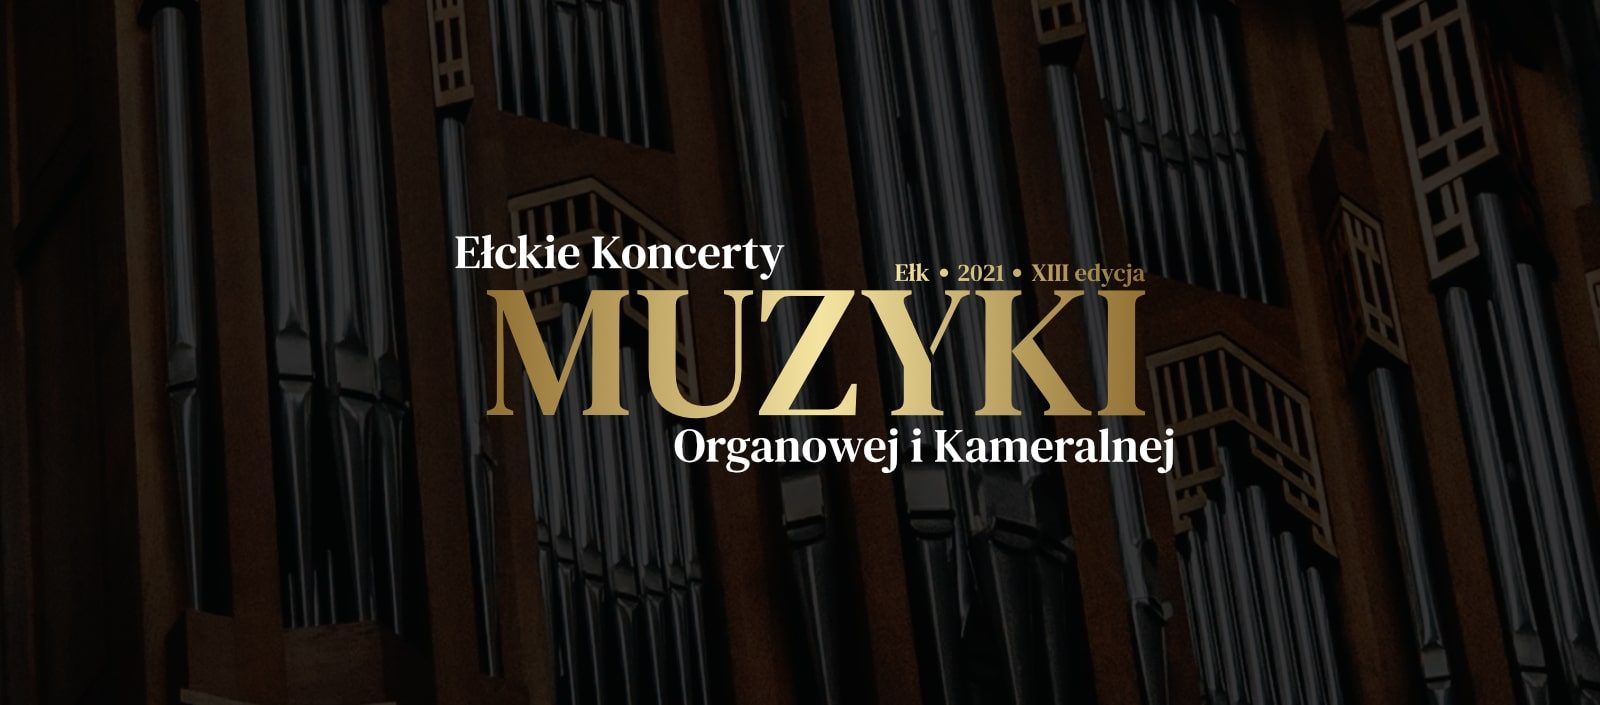 XIII Edycja Ełckie Koncerty Muzyki Organowej i Kameralnej